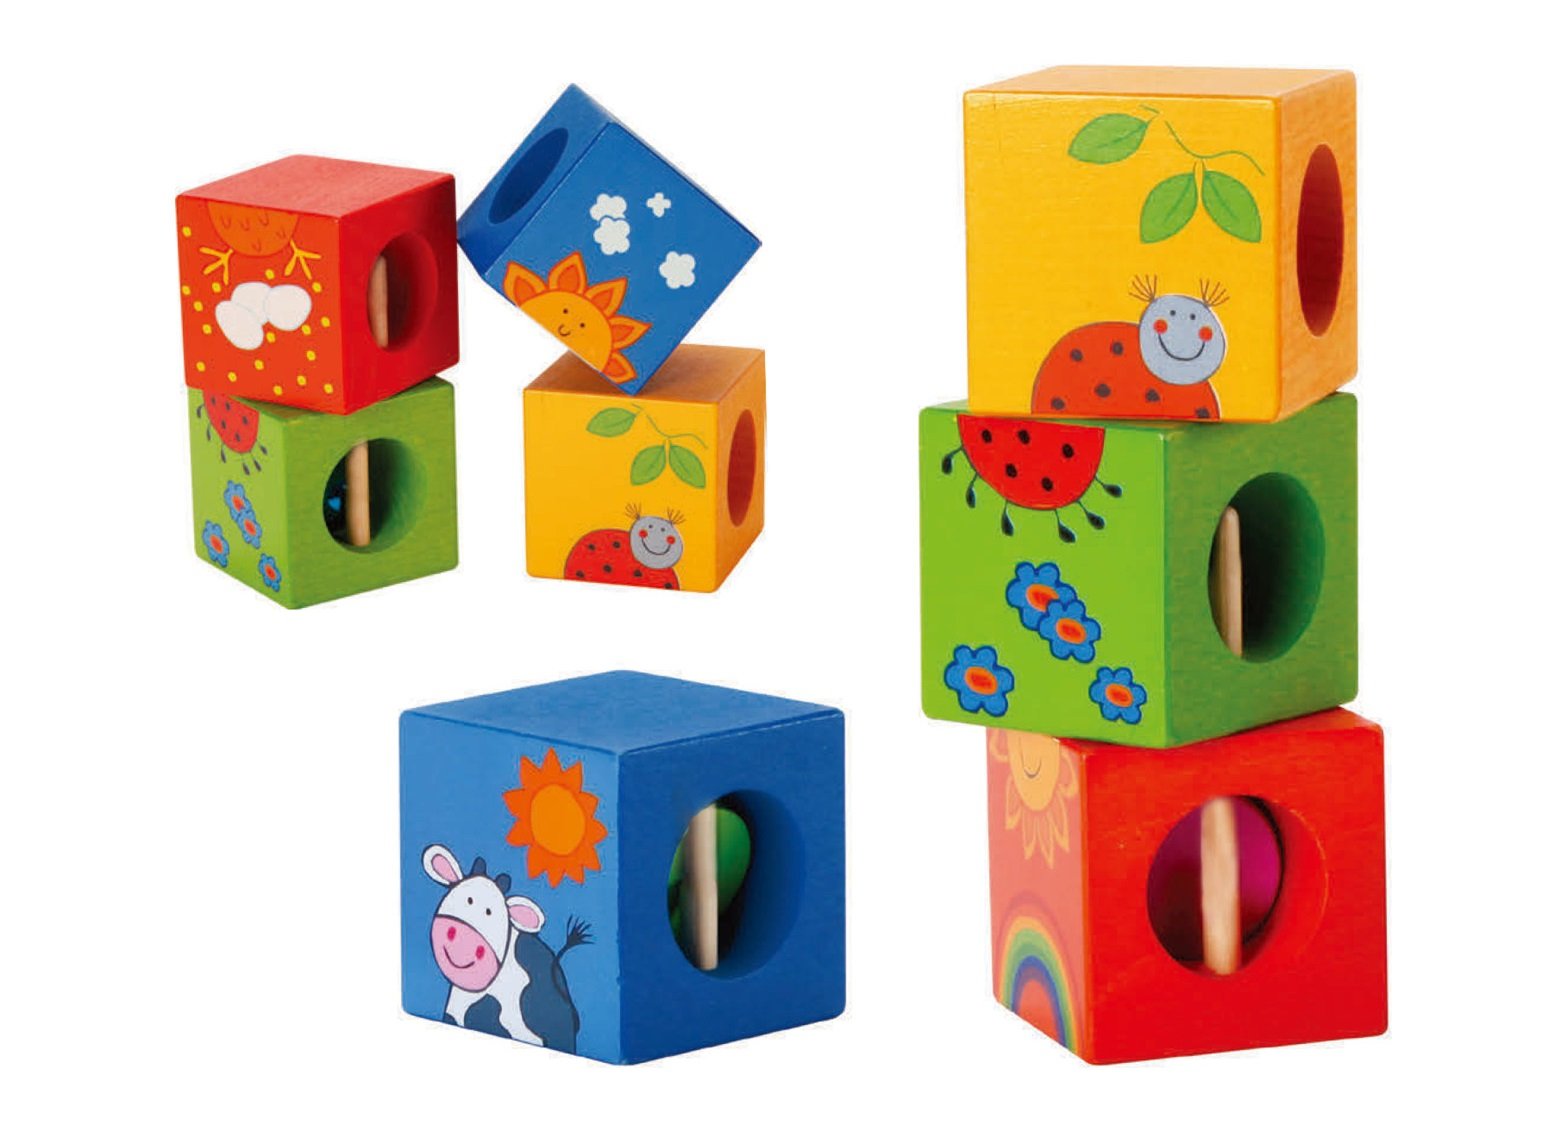 مکعب های زنگدار چوبی Classic World مدل Cubes with Puzzle 3522